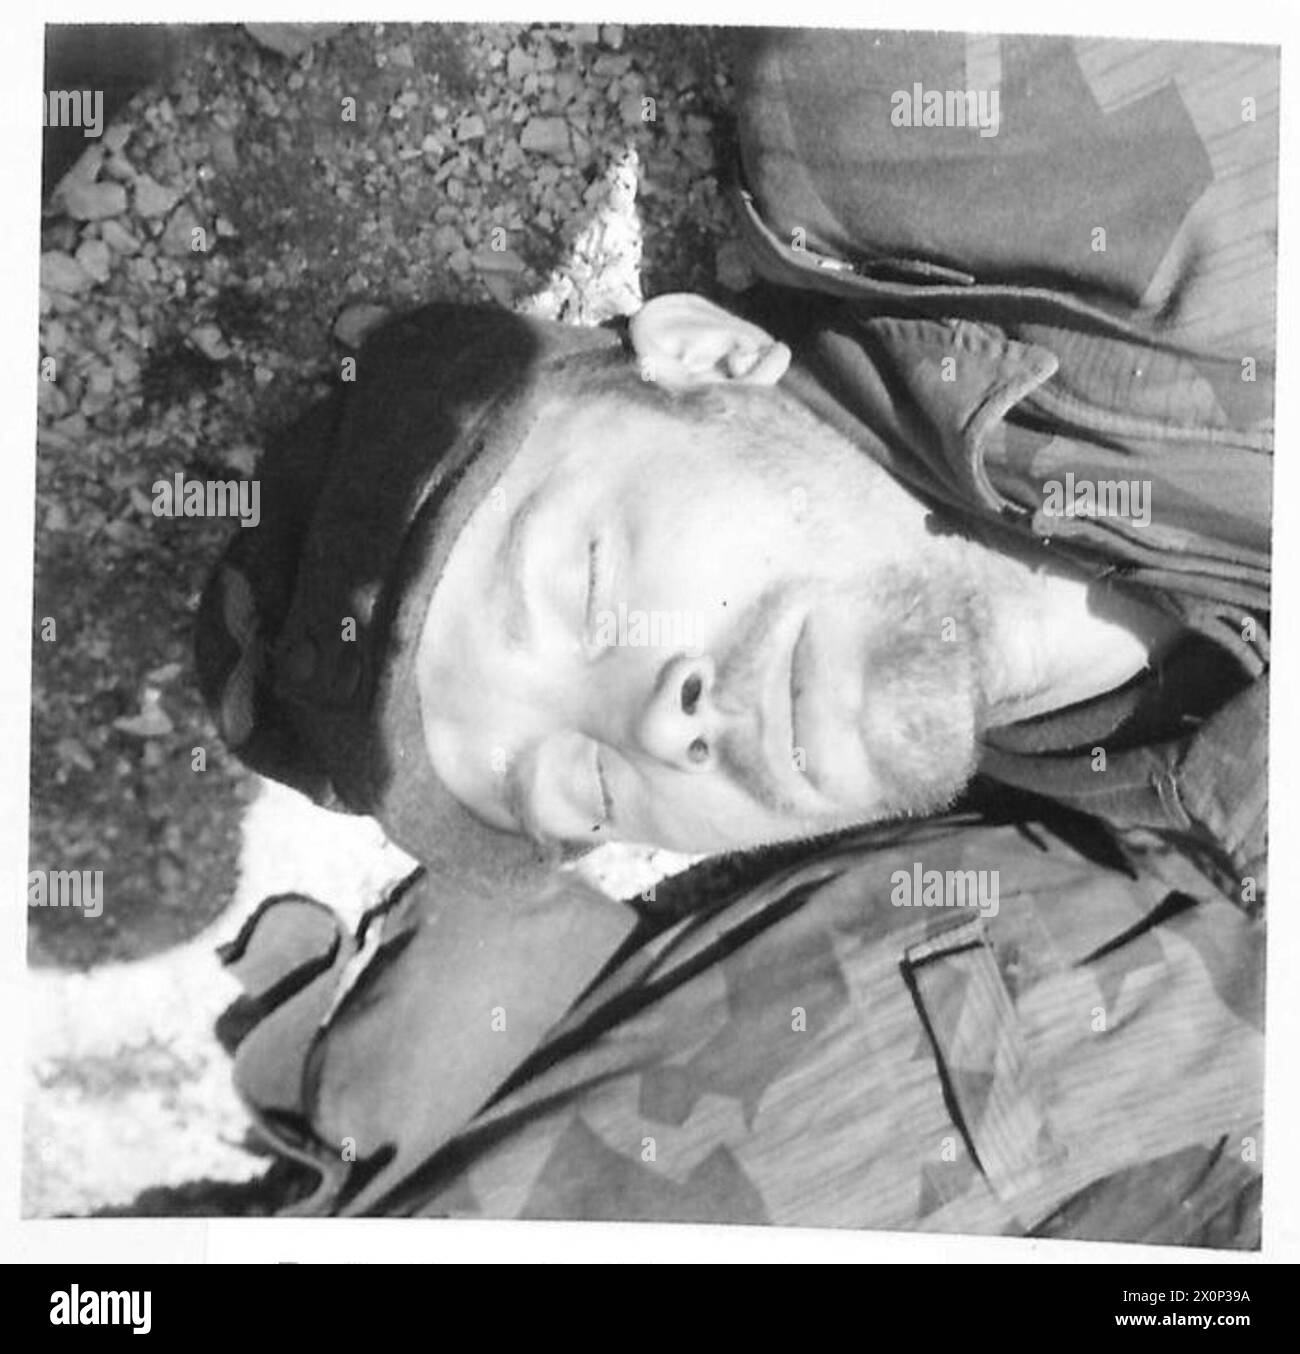 FÜNFTE ARMEE: CASSINO FRONTPARATROOP GEFANGENE AUS CASSINO - Ein deutscher Panzergrenadier, unrasiert, müde nach stundenlangem Zuschauen und Warten auf einen alliierten Angriff, schläft unwissend auf seine Umgebung an einem alliierten P.O.W. Sammelpunkt. Fotografisches negativ, britische Armee Stockfoto